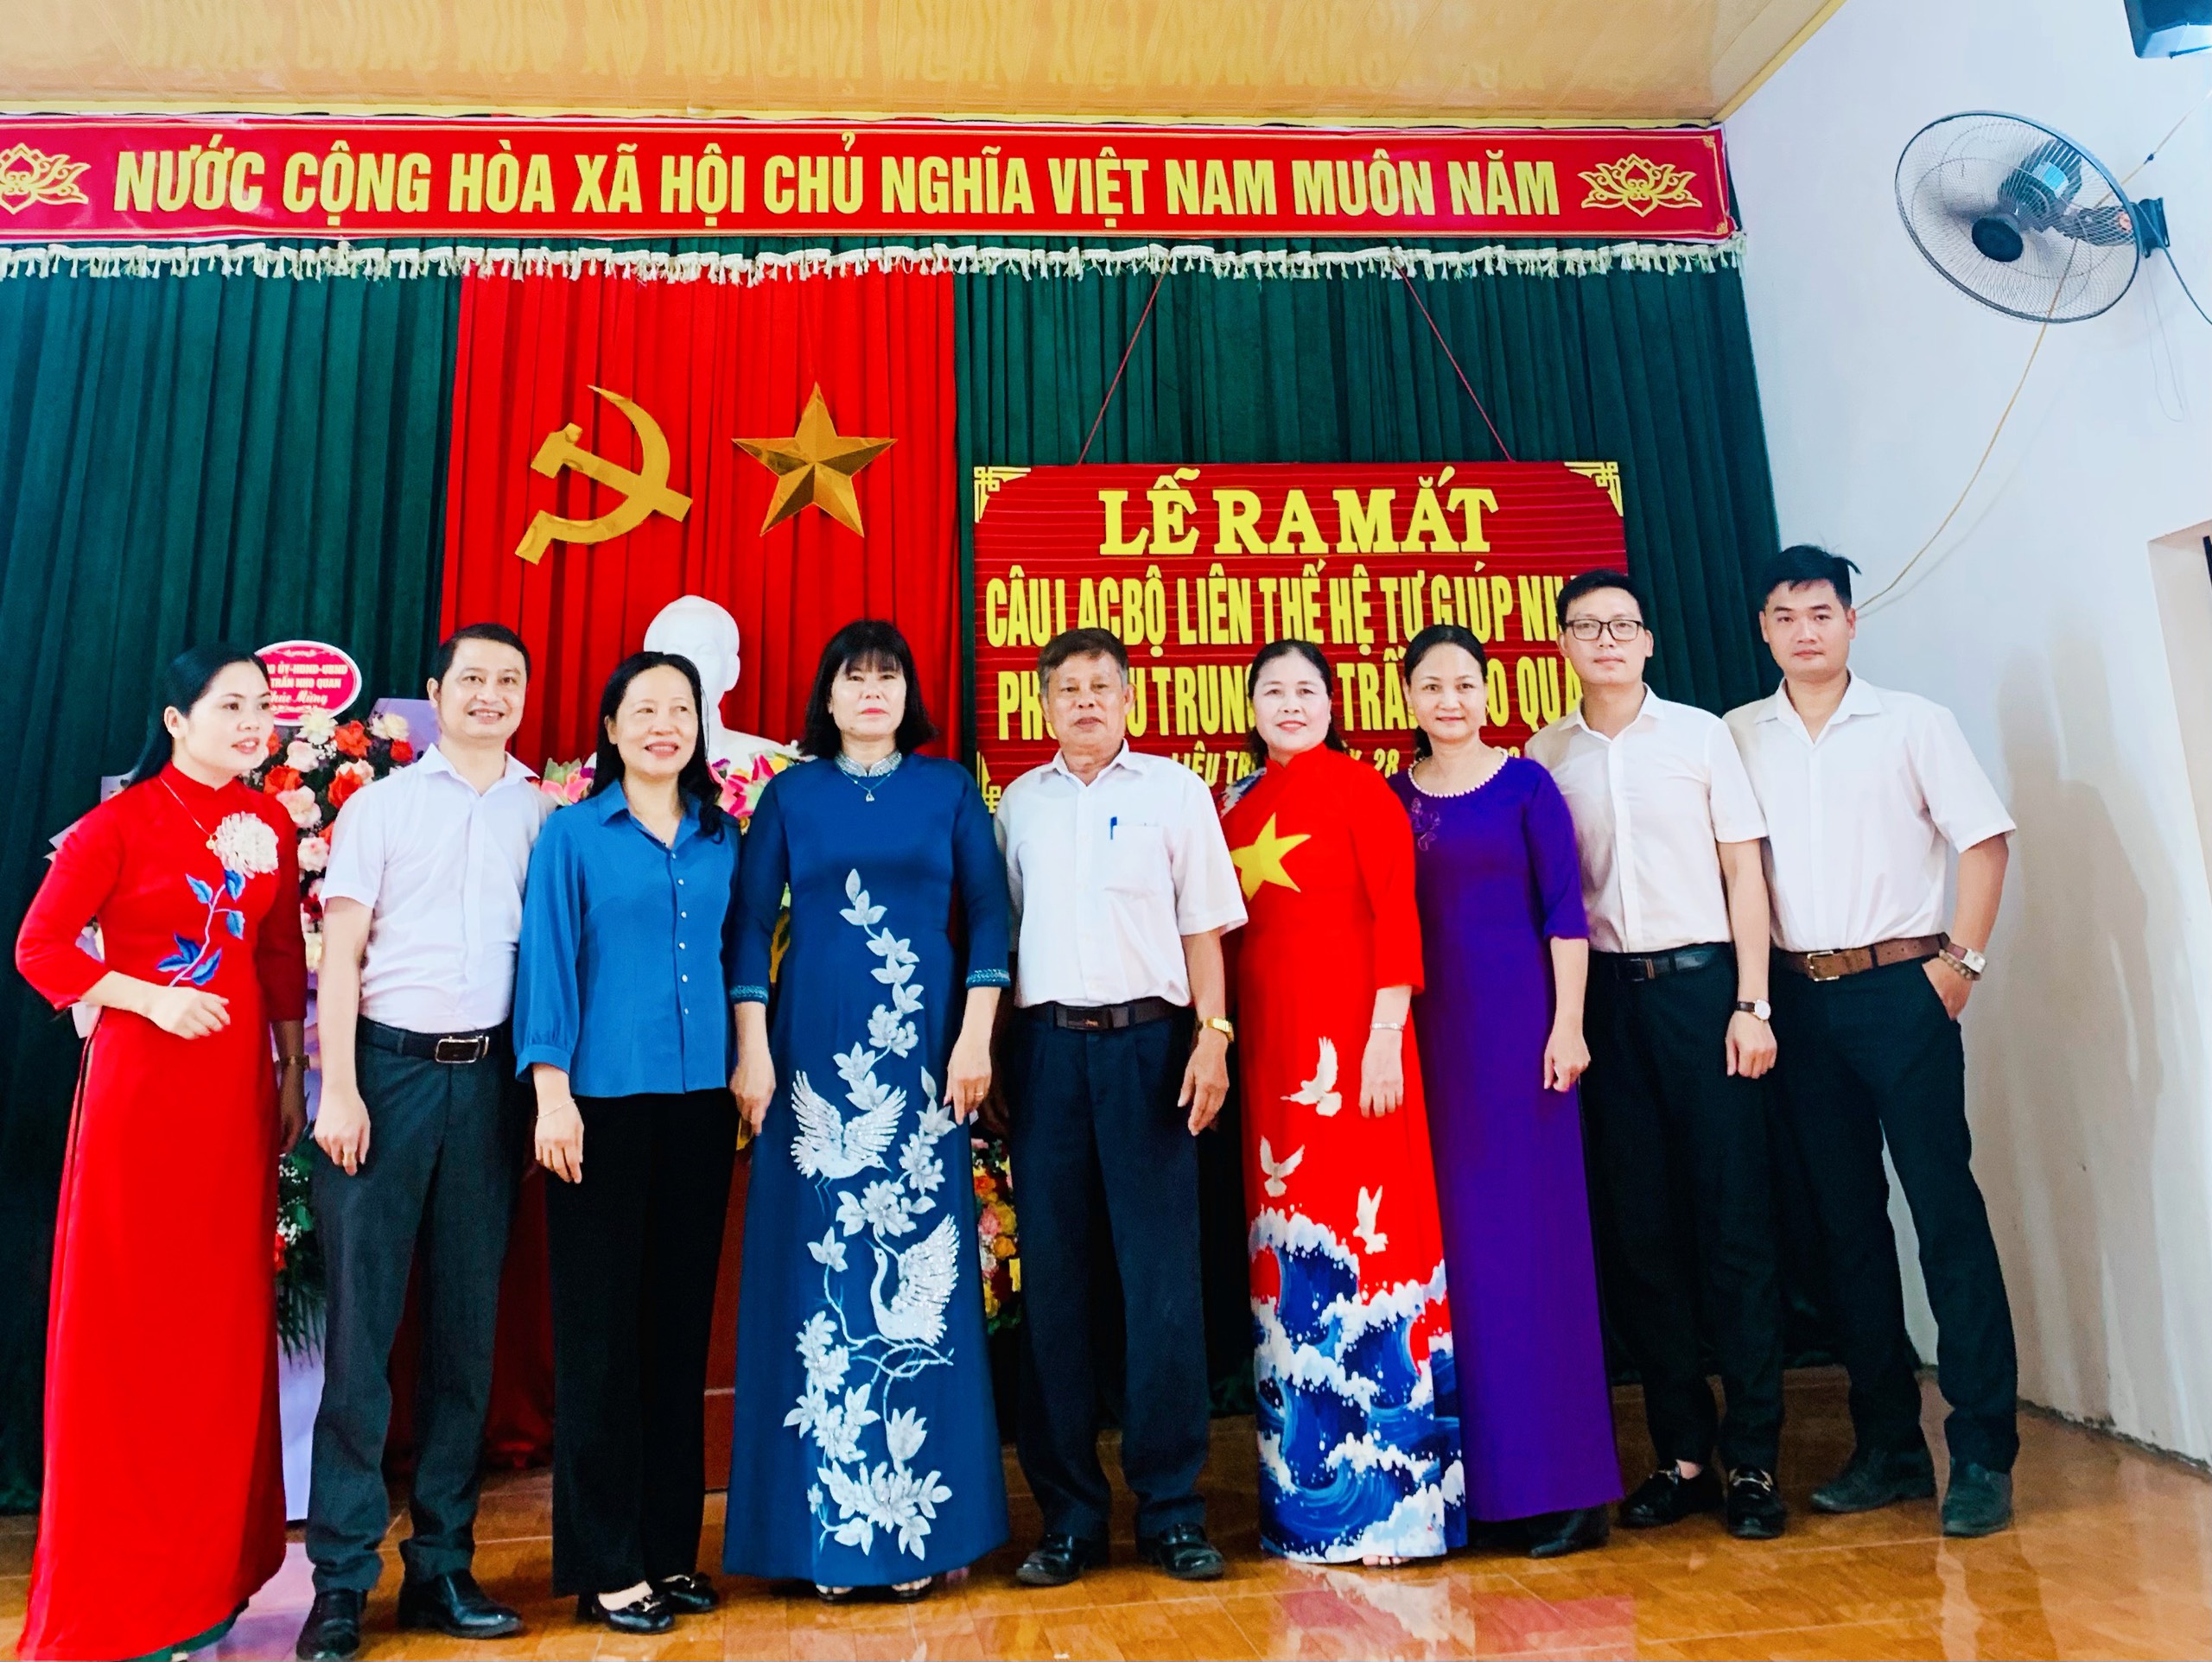 Lễ ra mắt Câu Lạc bộ Liên thế hệ tự giúp nhau tổ dân phố Liêu Trung, thị trấn Nho Quan